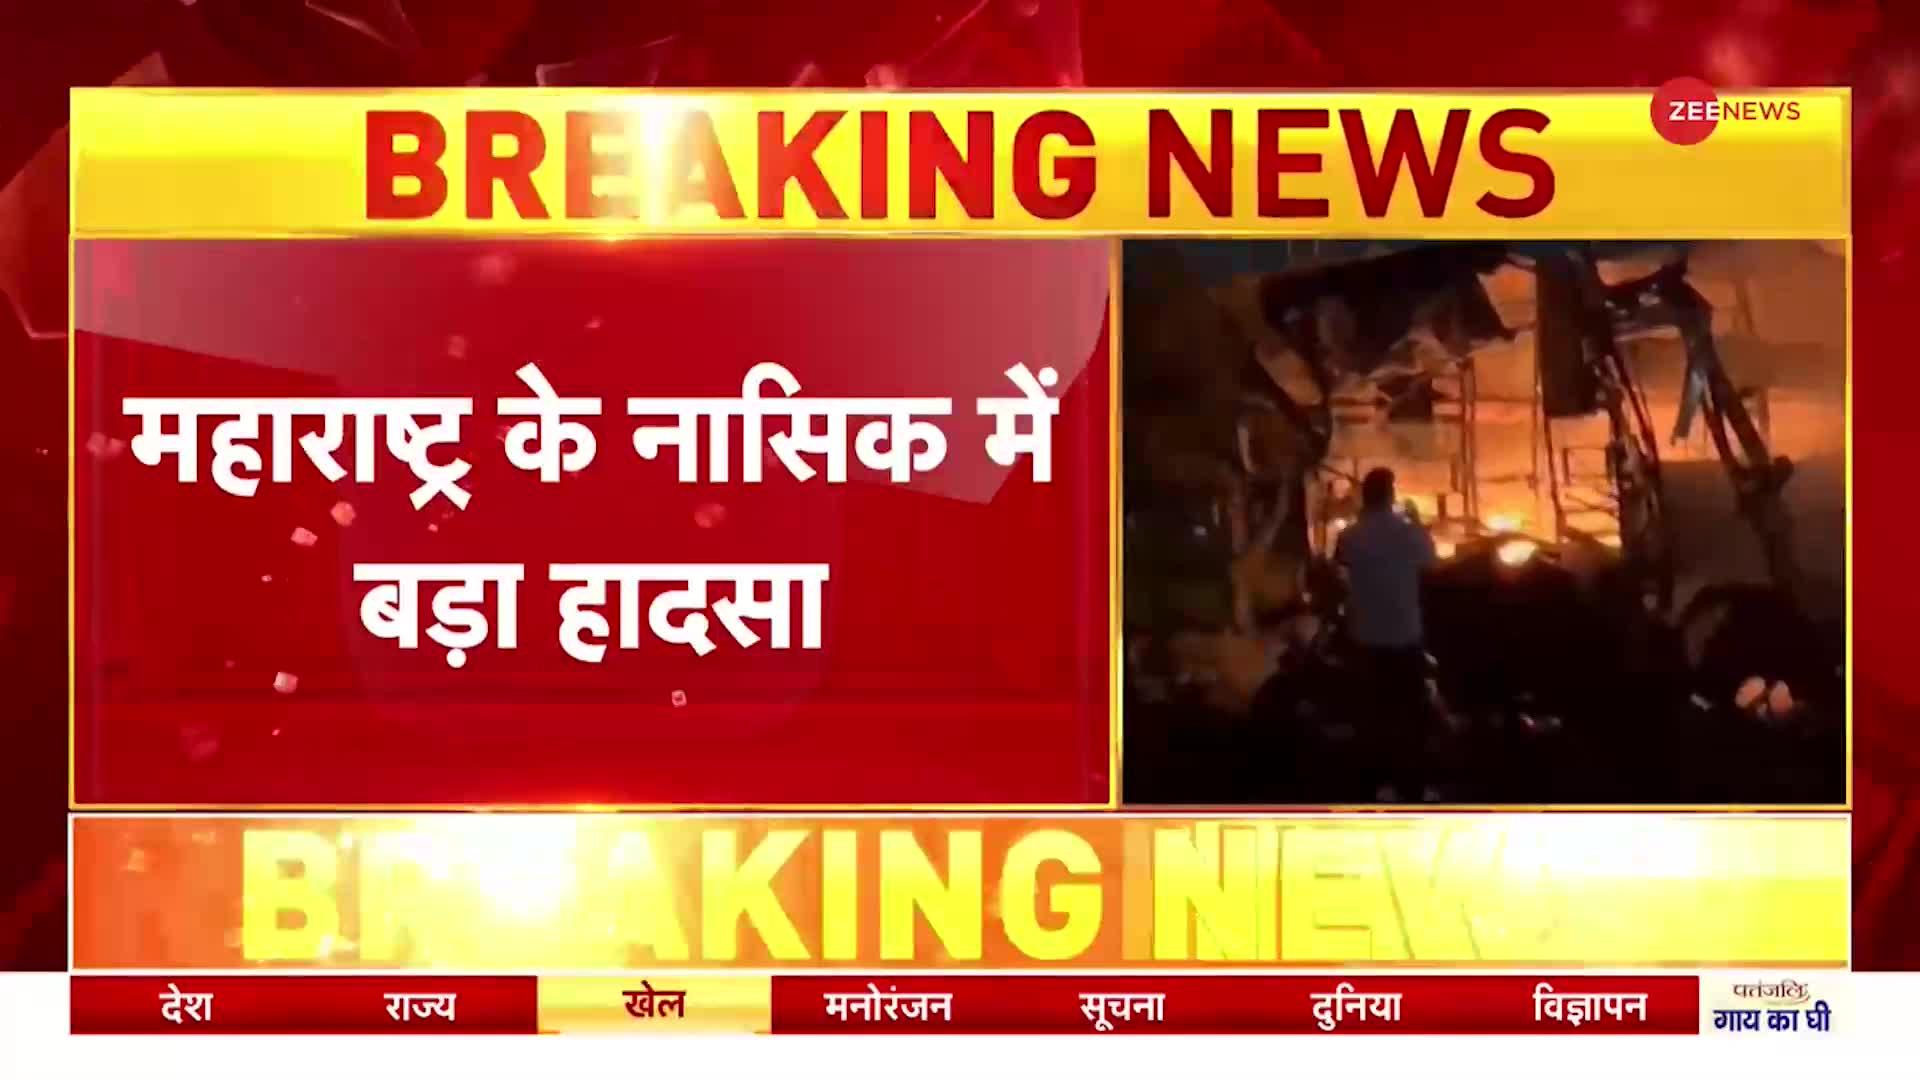 Nashik Bus Accident : महाराष्ट्र के नासिक में बड़ा हादसा, बस में आग लगने से 12 लोग जिंदा जले